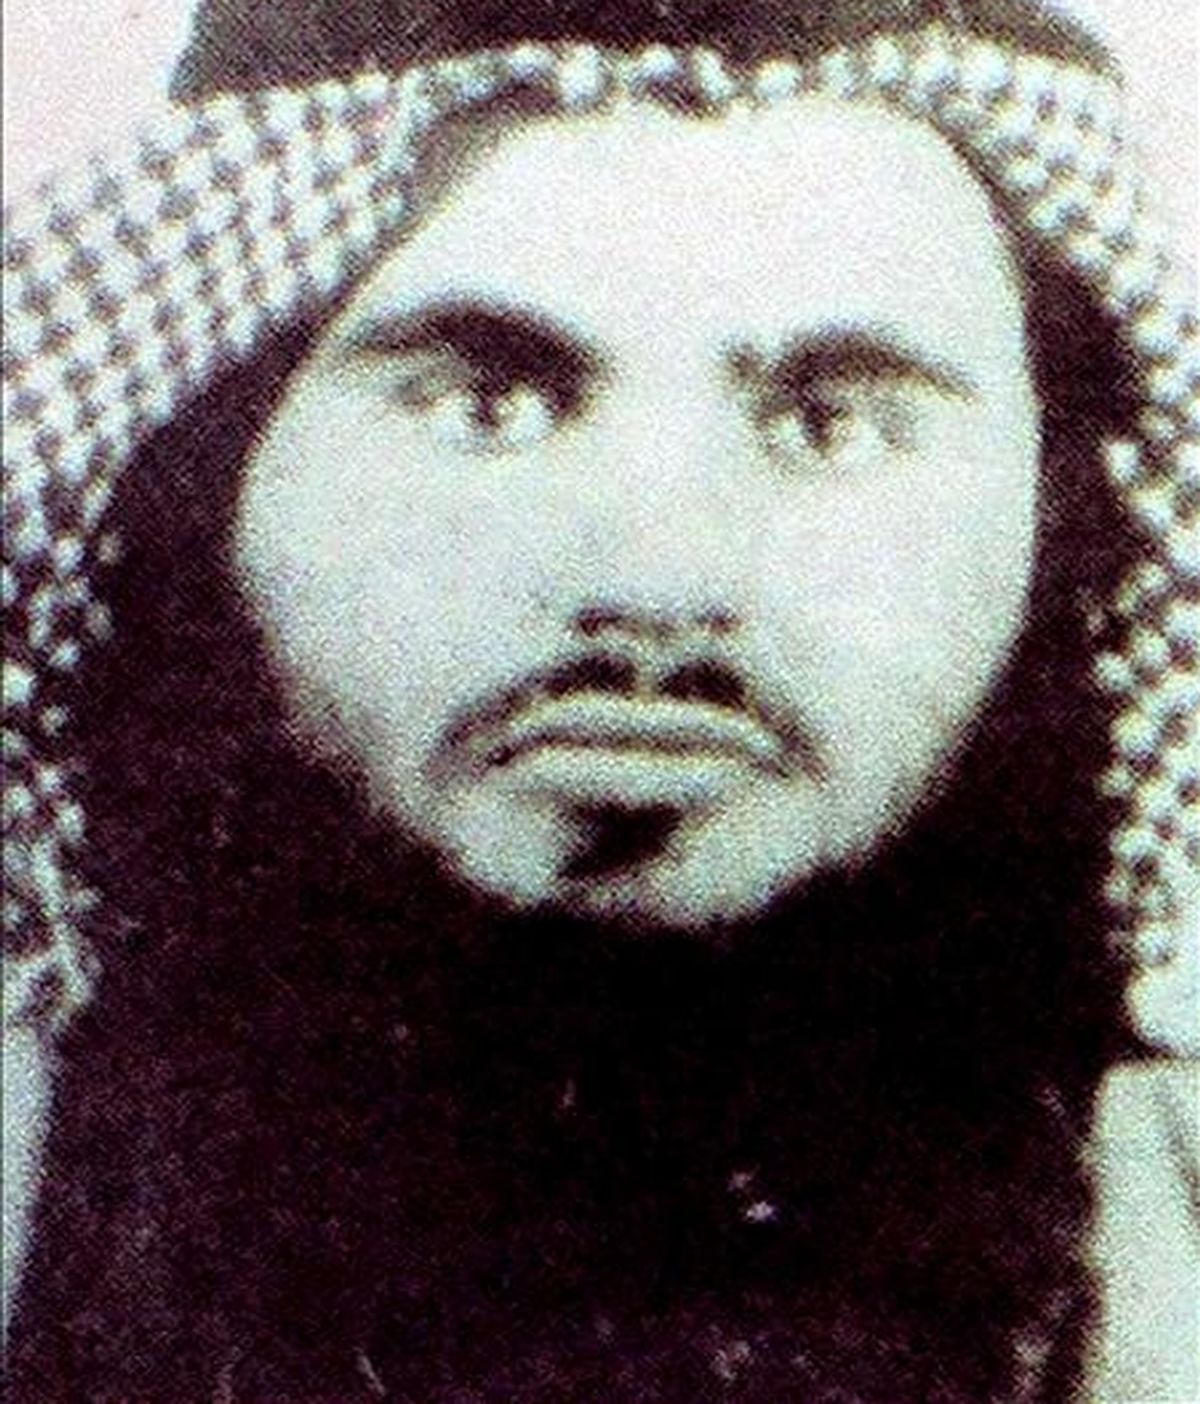 Fotografía de archivo sin fechar facilitada por las autoridades jordanas el 21 de junio de 2008 que muestra a Omar abu Omar, también conocido como Abu Qatada, un clérgio musulmán radical. EFE/Archivo